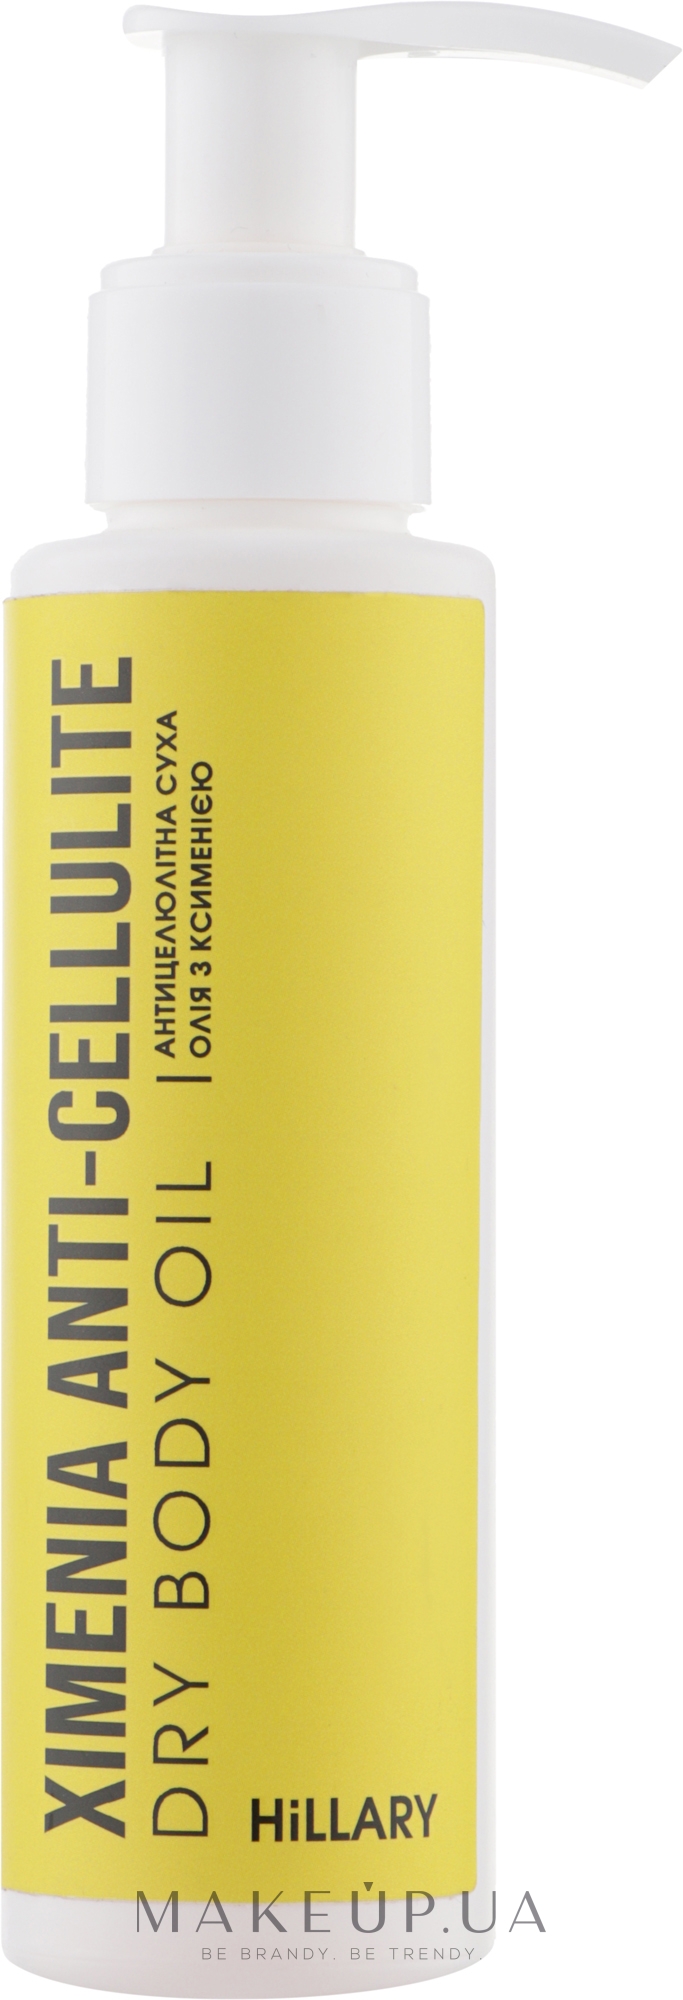 Антицелюлітна суха олія з ксименією - Hillary Хimenia Anti-cellulite Dry Body Oil — фото 100ml